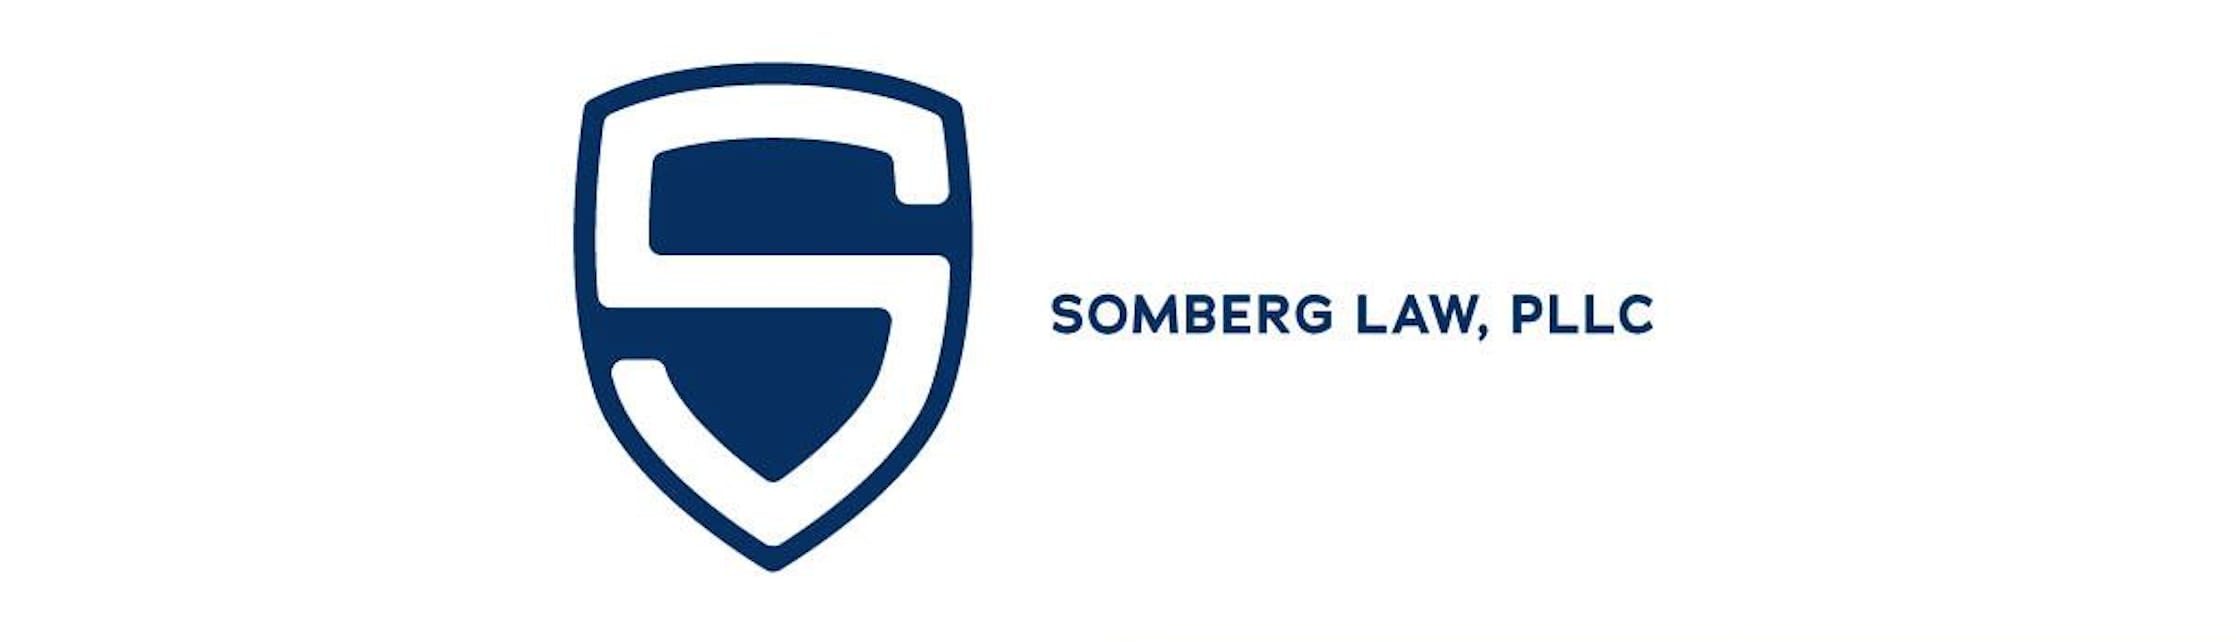 Somberg Law, PLLC's Logo